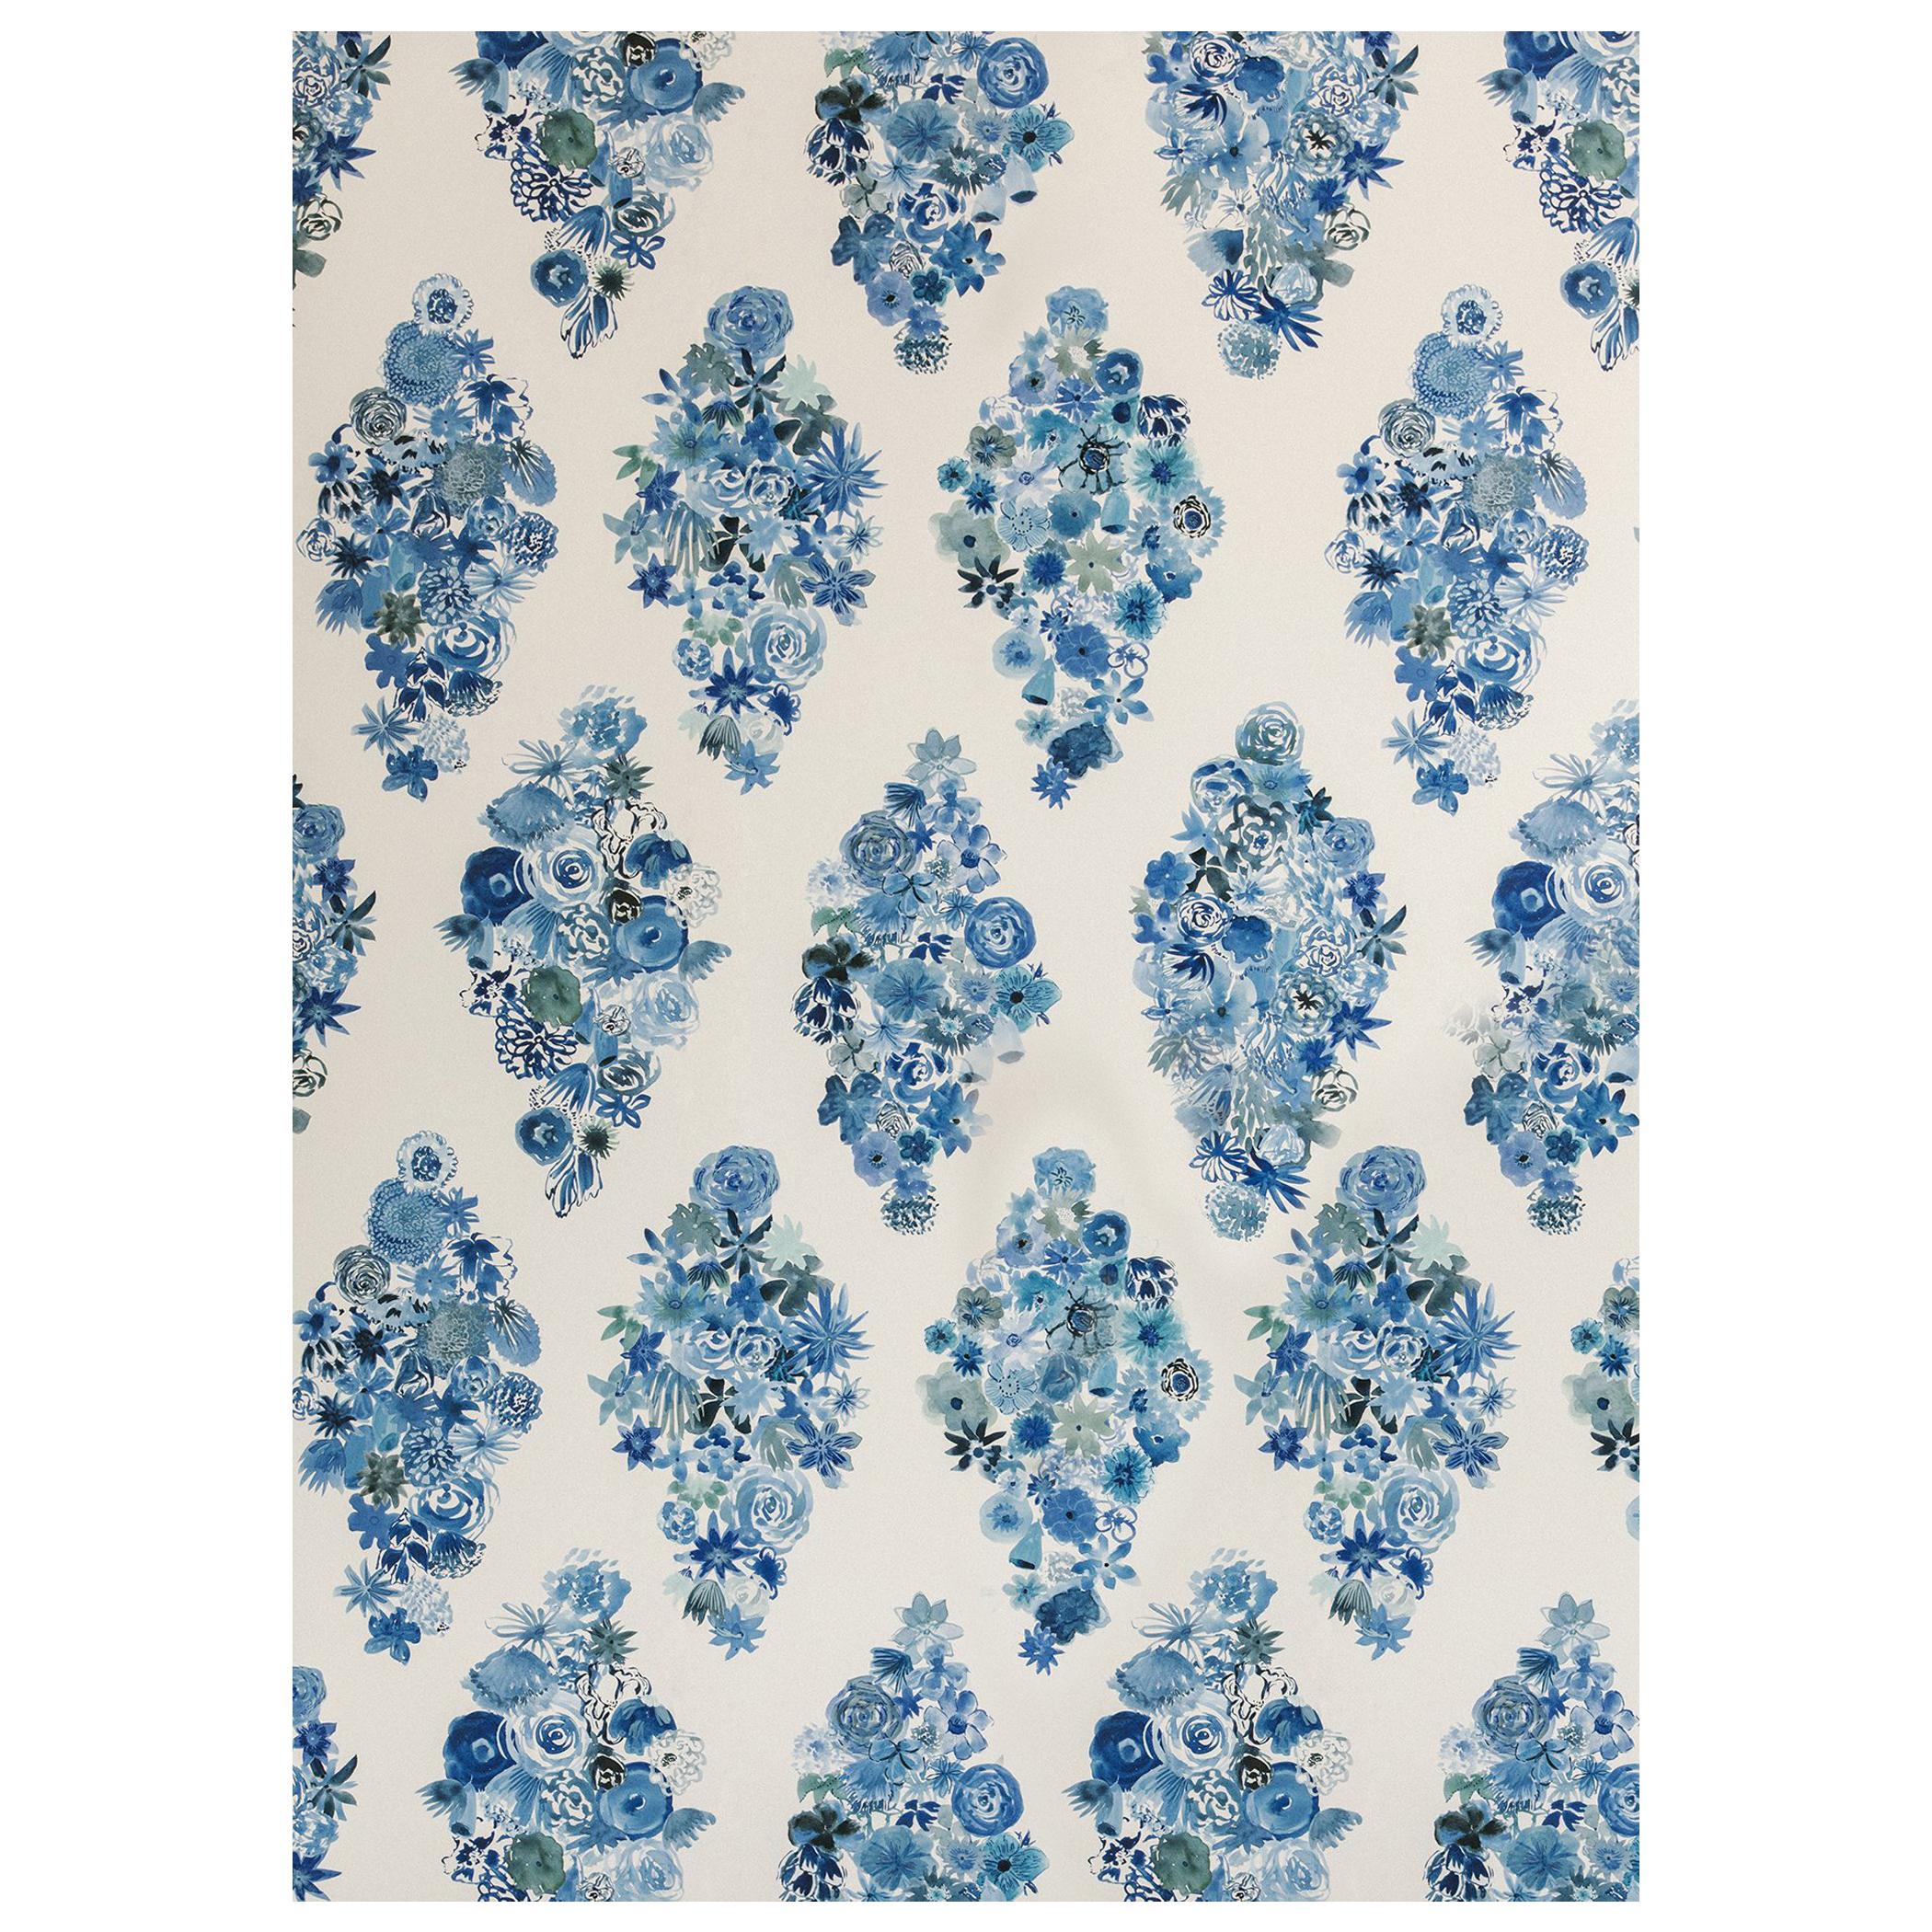 Flora - Casbah Blue Floral Wallpaper For Sale